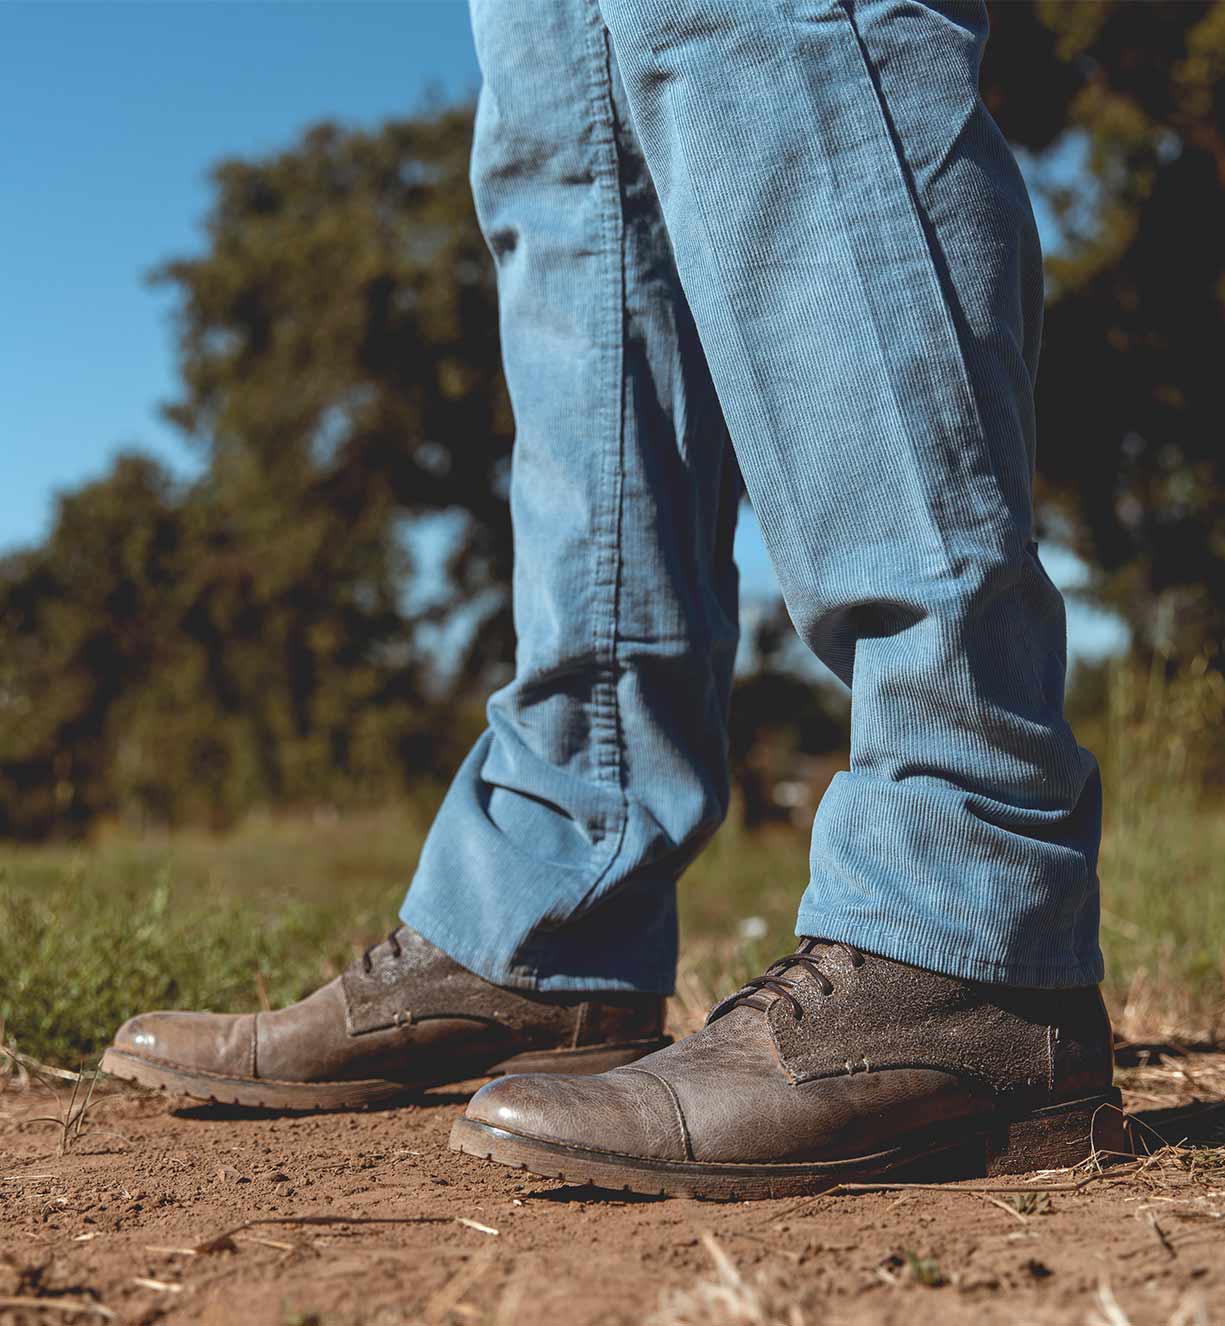 A man's feet standing on a Bed Stu Dreck field.